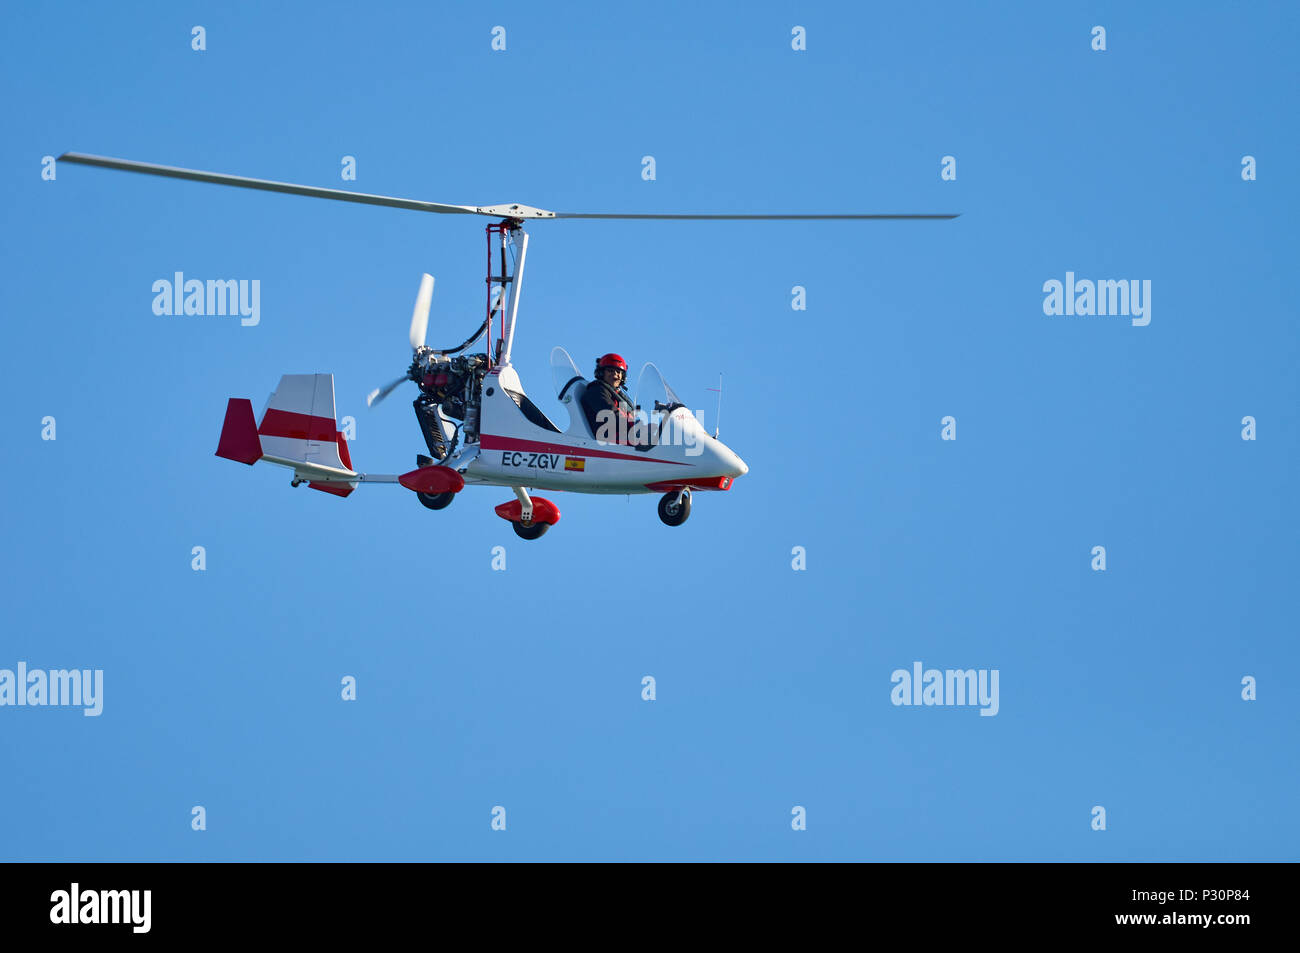 Gyro Magni M-16 Formateur Tandem autogyre biplace voler contre un ciel bleu dans le Parc Naturel de Ses Salines (Formentera, Iles Baléares, Espagne) Banque D'Images